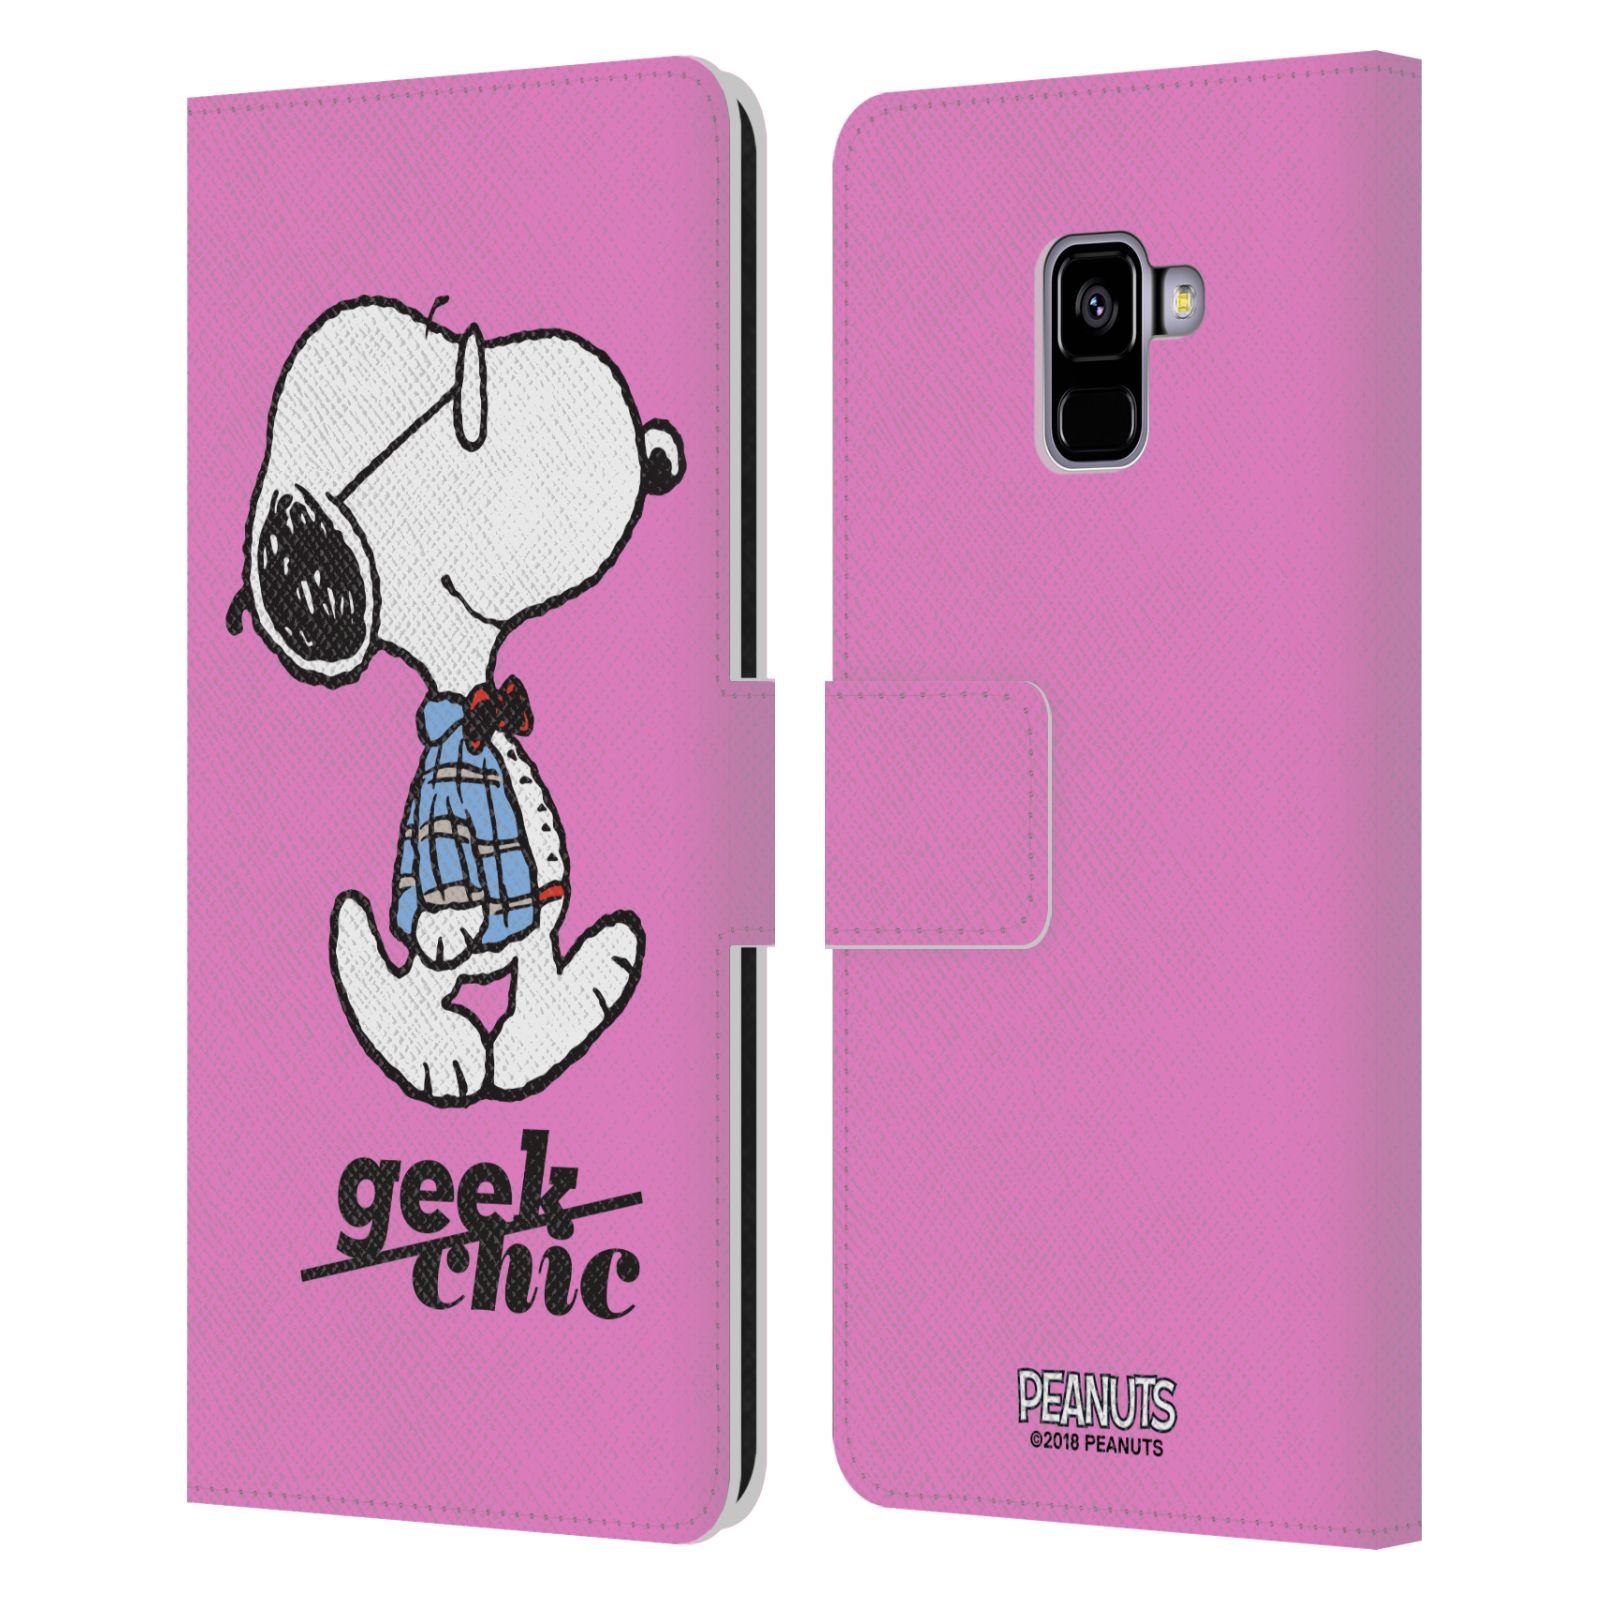 Pouzdro na mobil Samsung Galaxy A8 PLUS 2018 - Head Case - Peanuts - růžový pejsek snoopy nerd